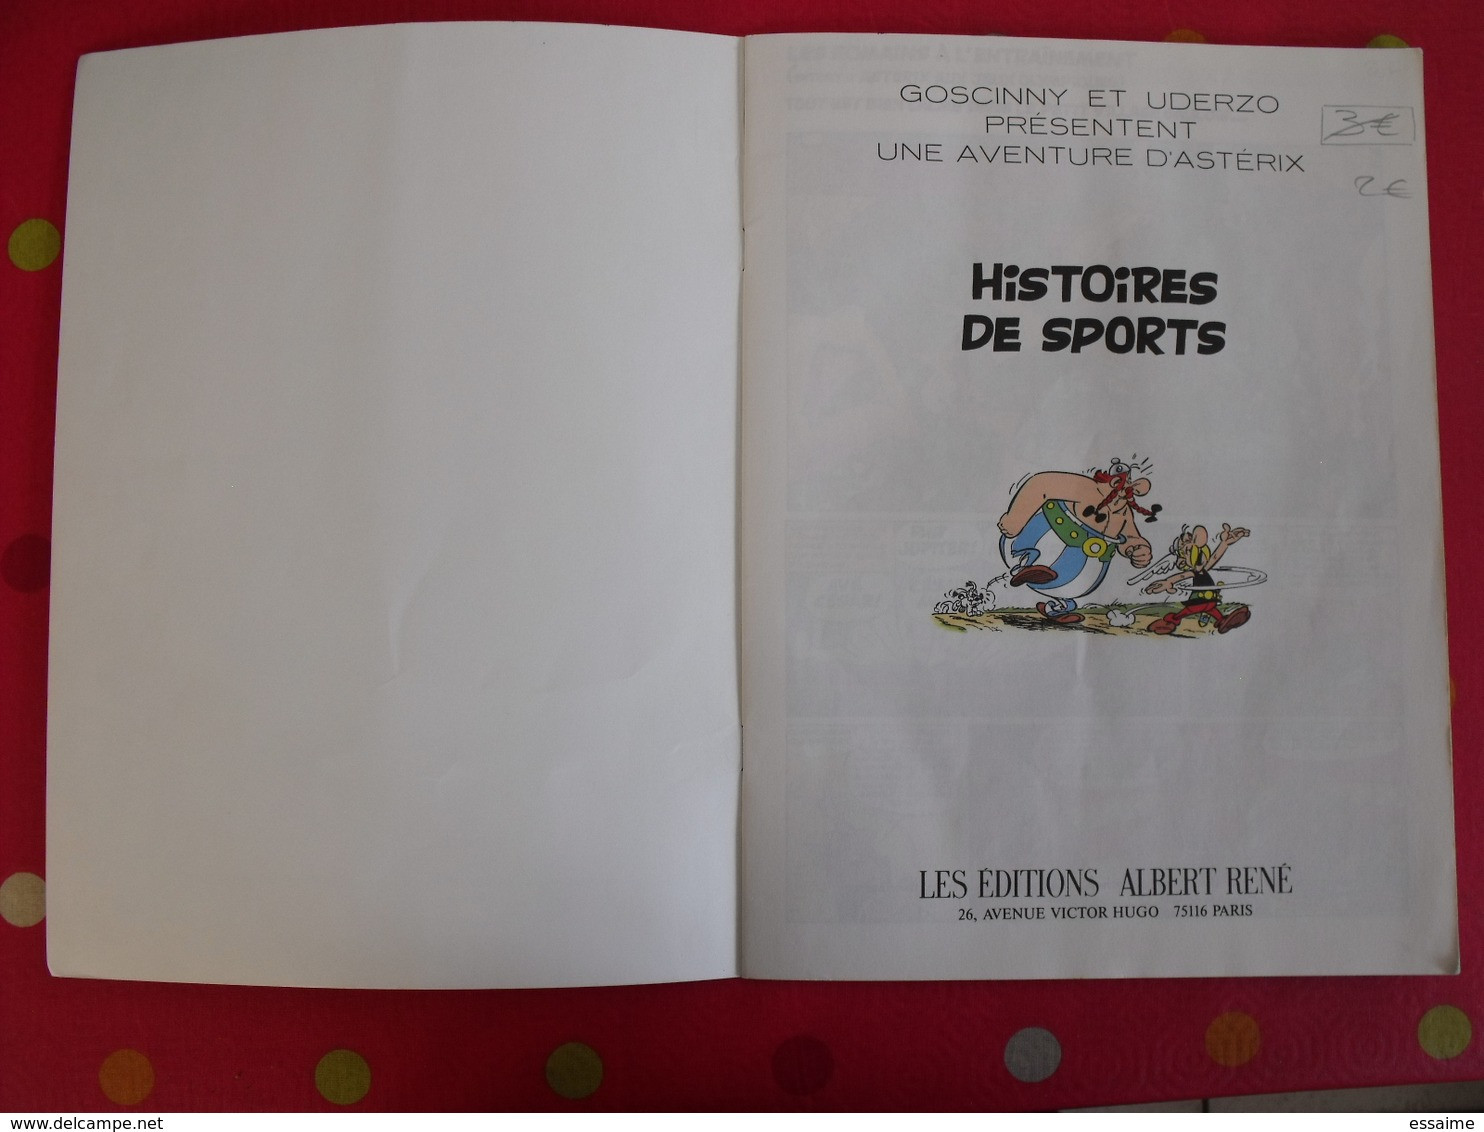 Astérix, Histoire De Sports. Goscinny Et Uderzo. éditions Albert-René. Offert Par Total. 1992 - Asterix